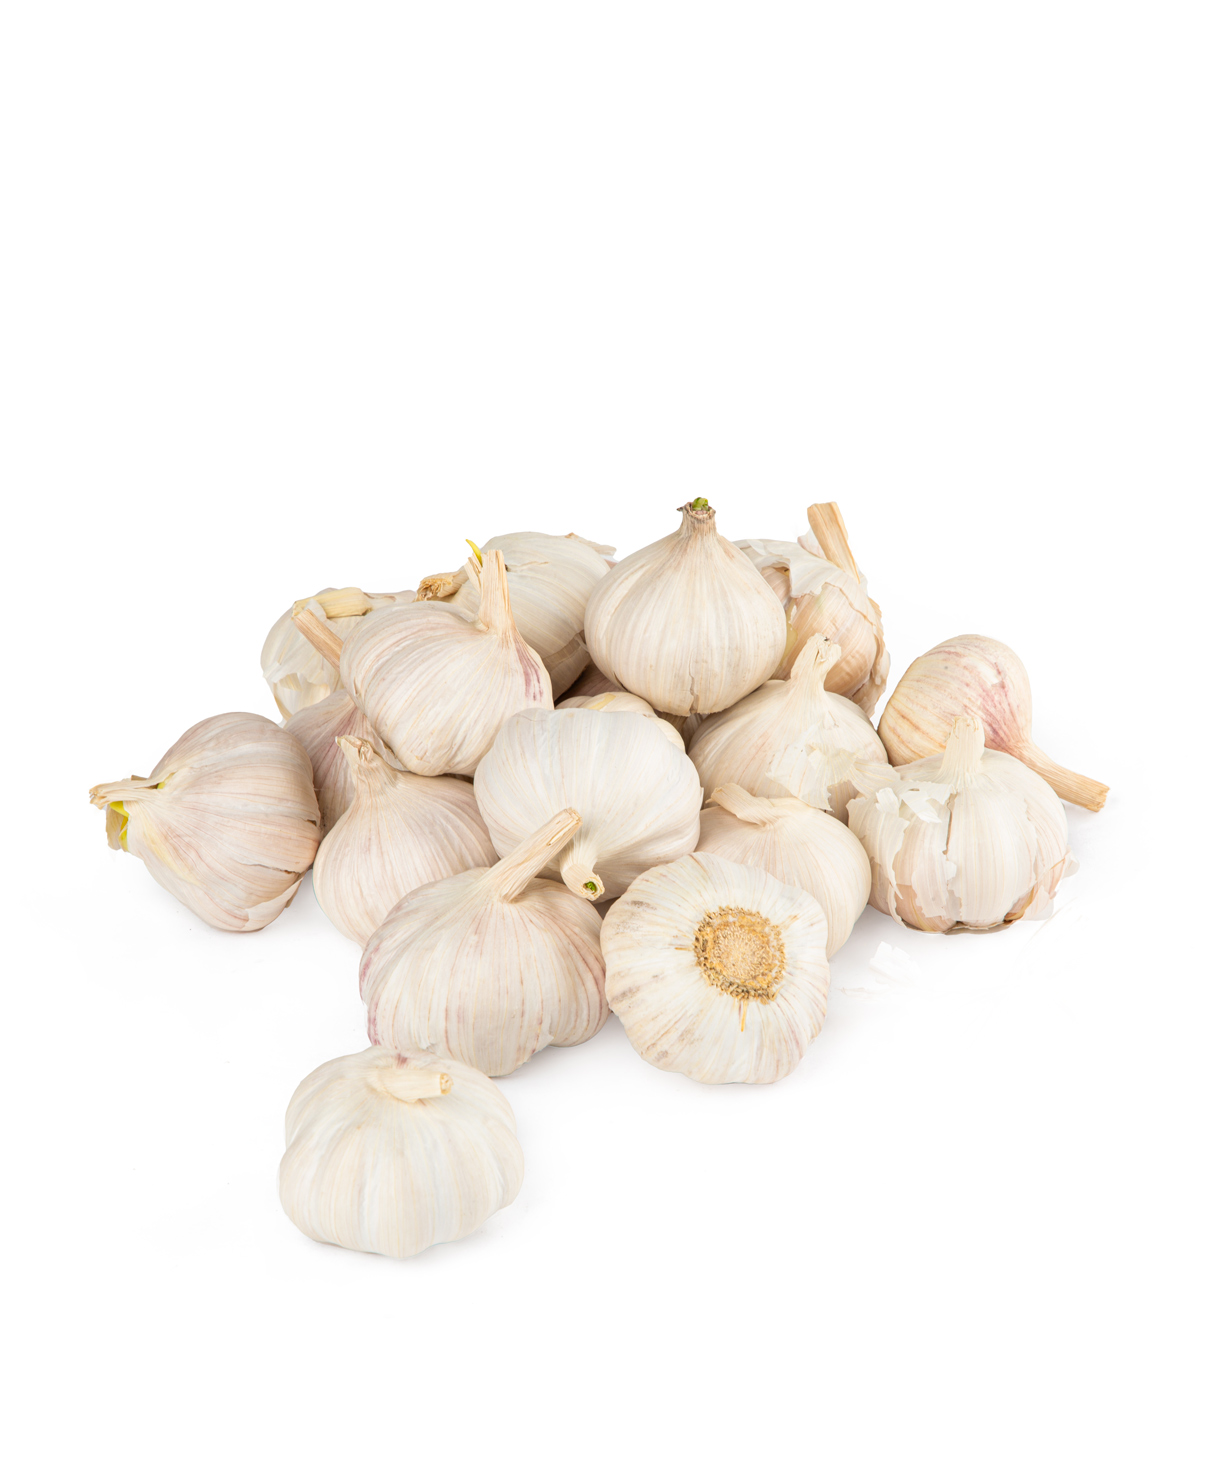 Garlic 1 kg